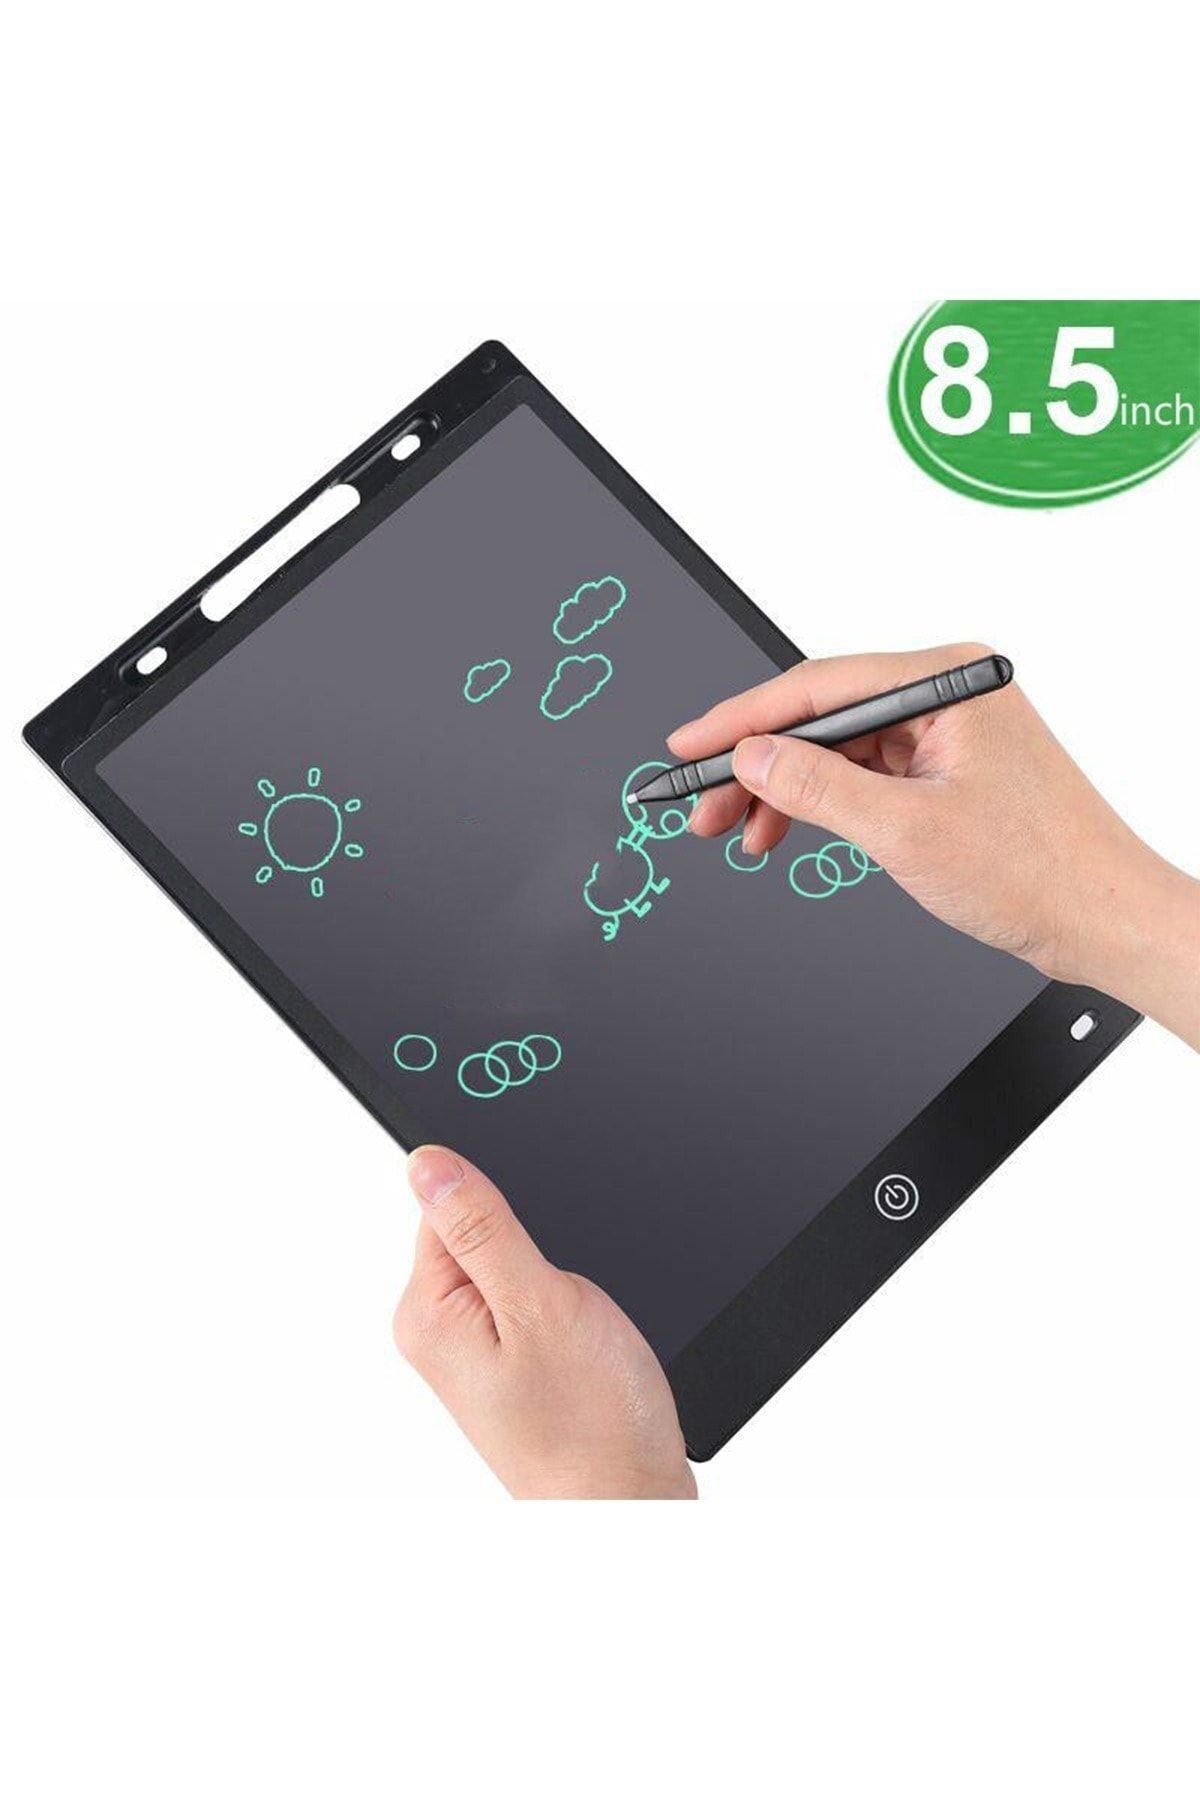 Benefse 8.5 Inç Writing Tablet Lcd Dijital Kalemli Çizim Yazı Tahtası Grafik Eğitim Tableti 1 Adet